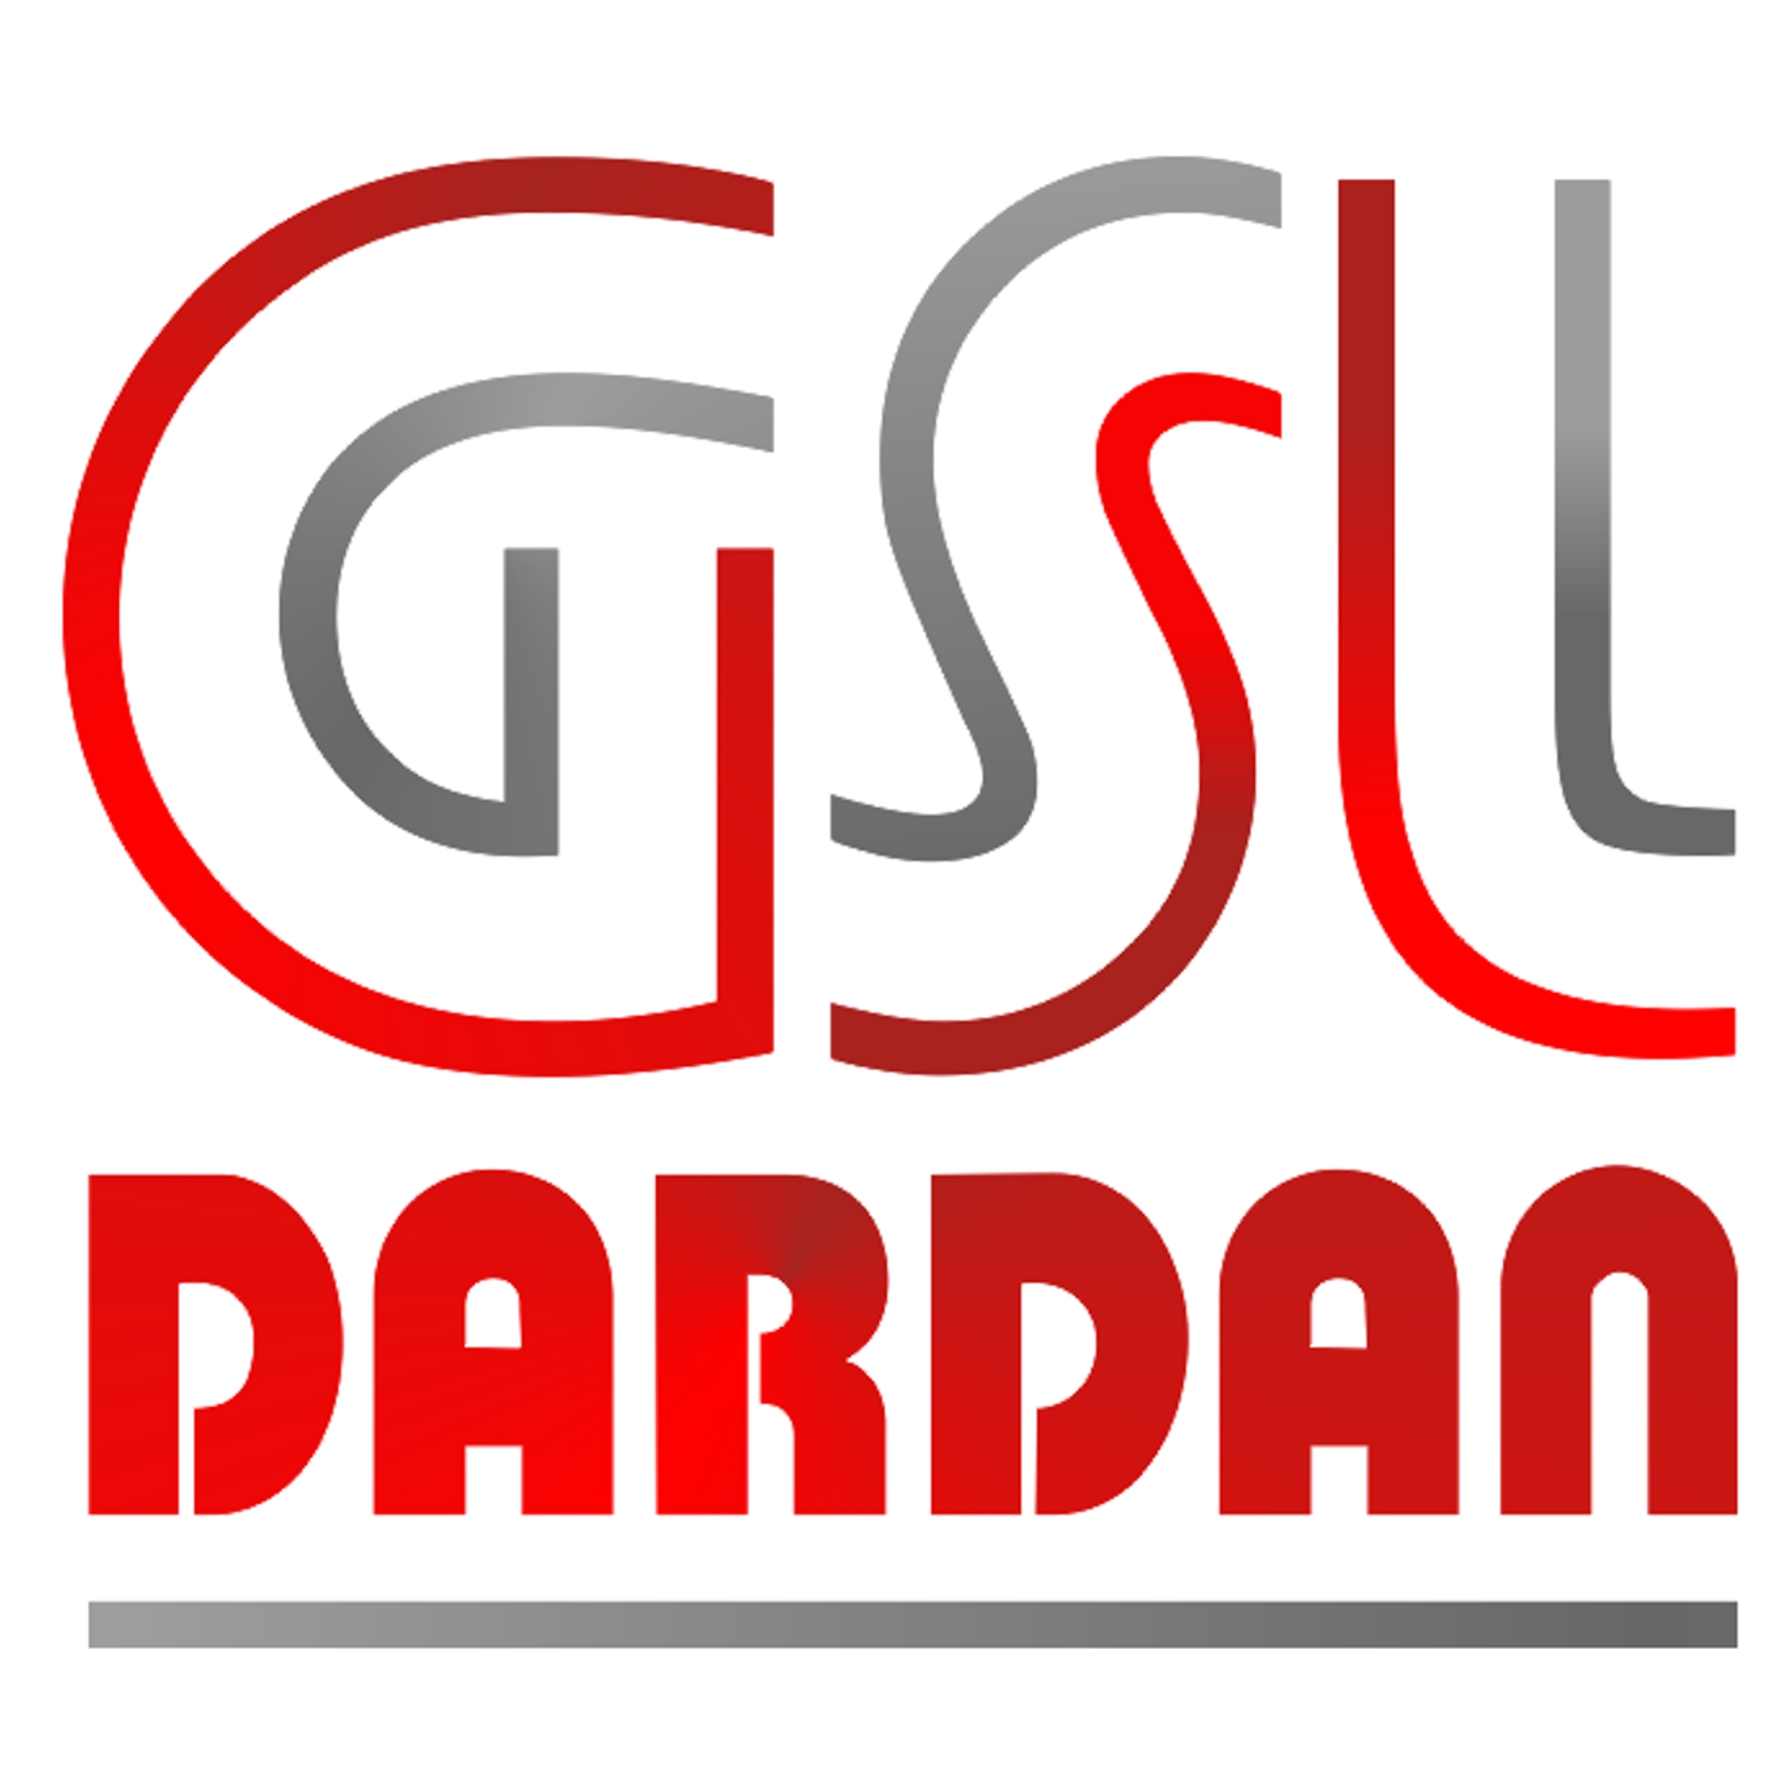 GSL Dardan Security